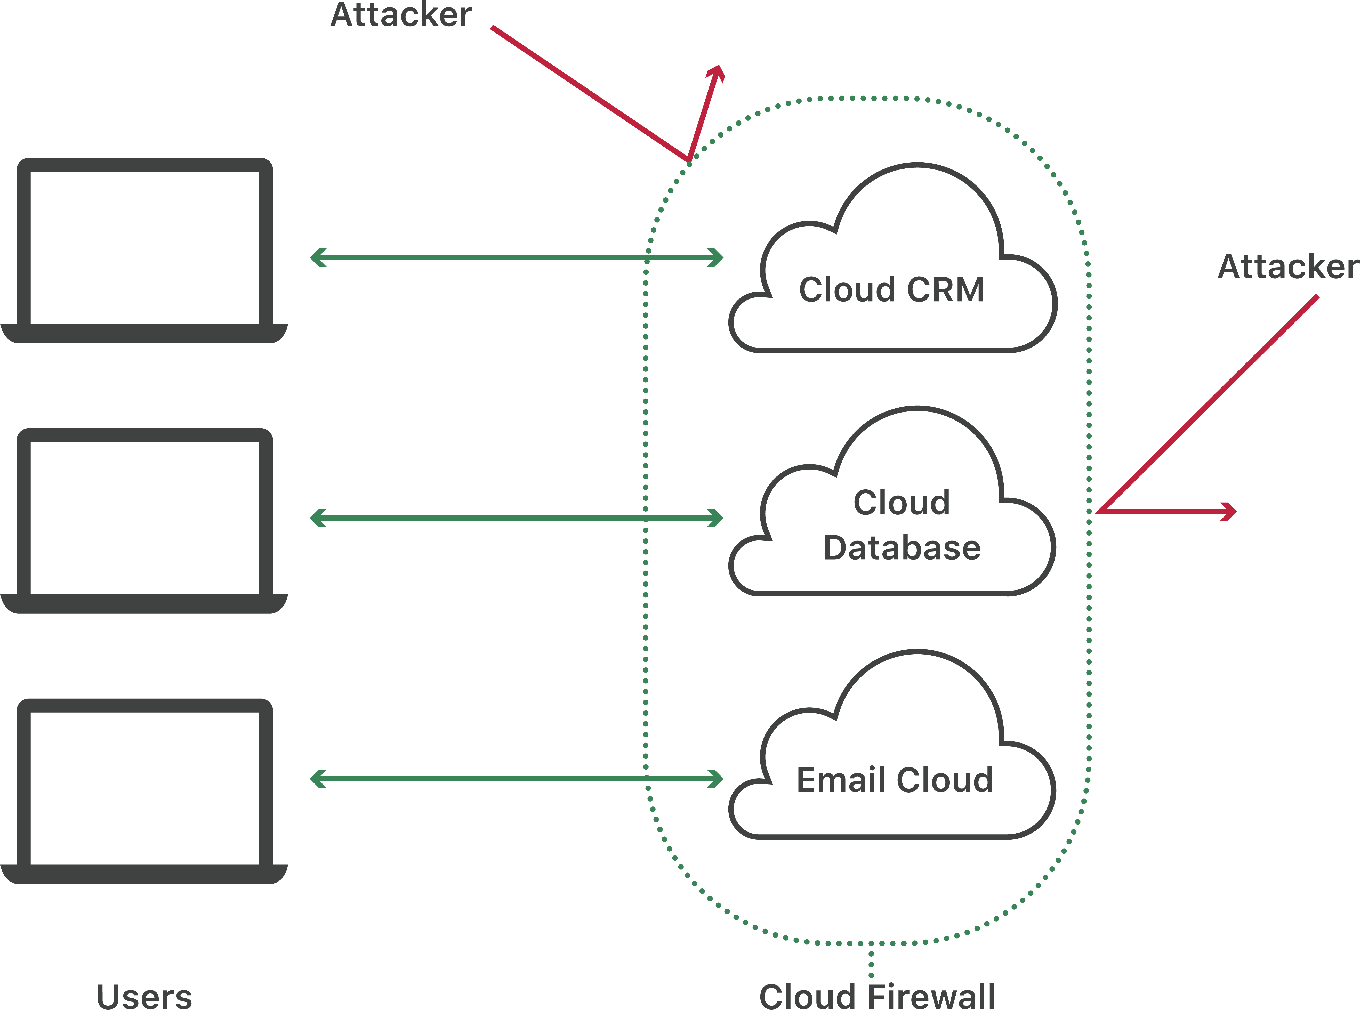 El firewall en la nube bloquea los ataques en los despliegues en la nube